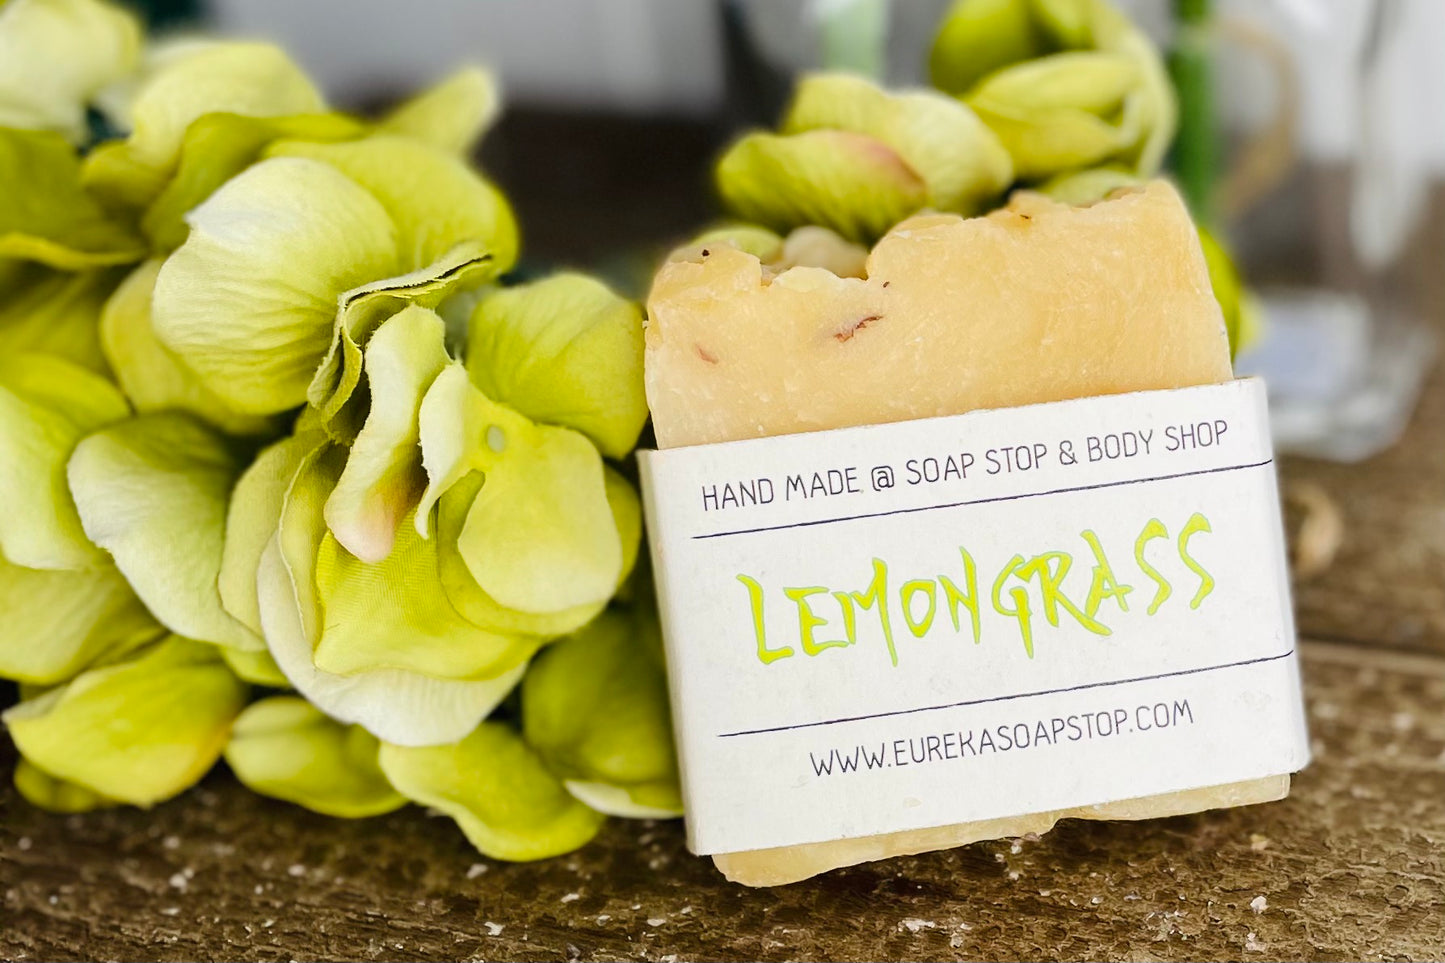 Arkansas Hand Poured Lemongrass Soap